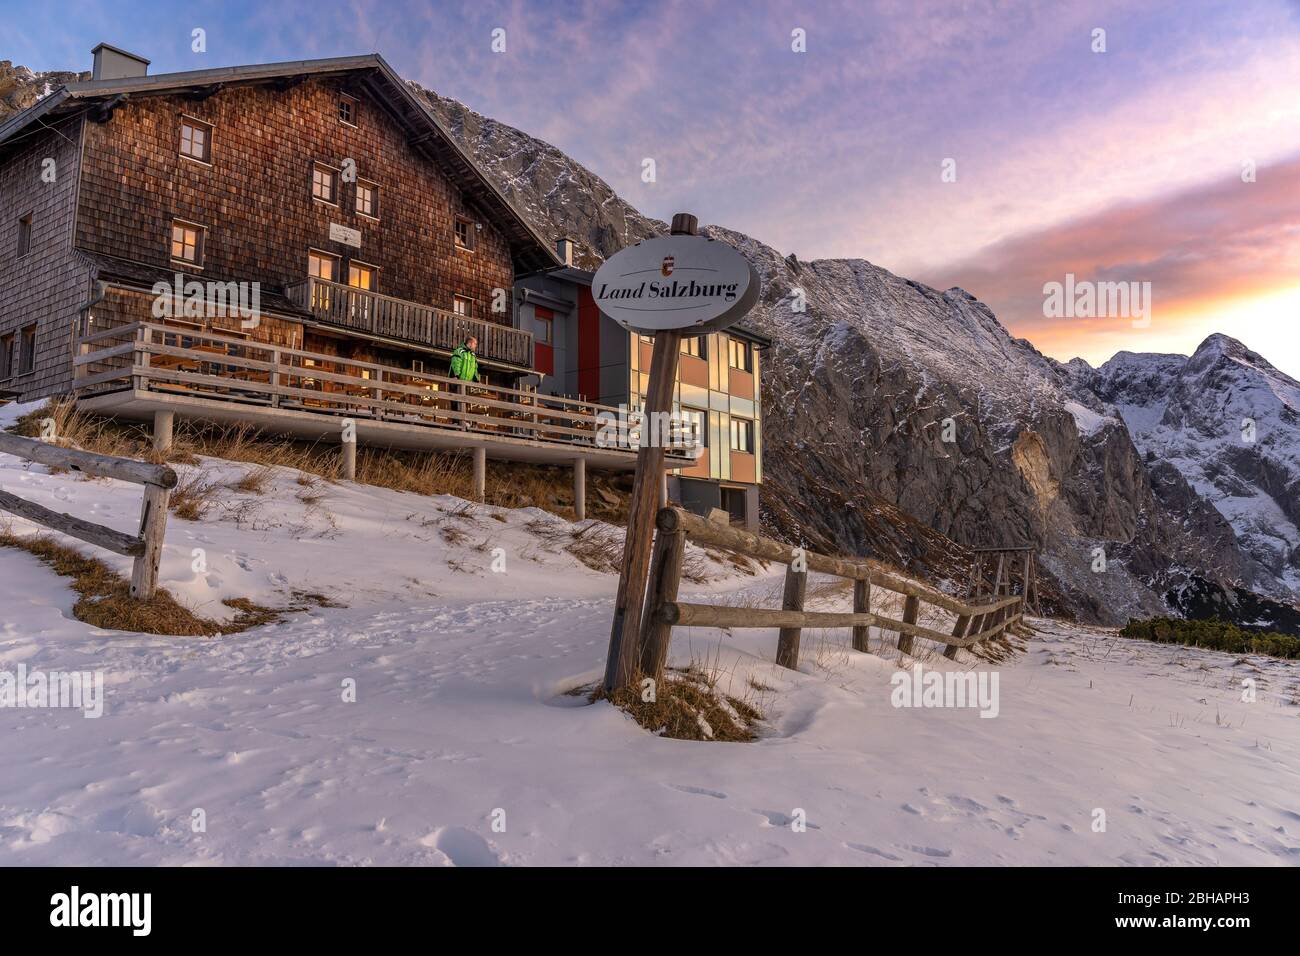 Europa, Deutschland, Bayern, Berchtesgadener Land, Carl-von-Stahl-Haus, Bergsteiger genießt den Sonnenaufgang auf der terrasse des Carl-von-Stahl-Haus Banque D'Images